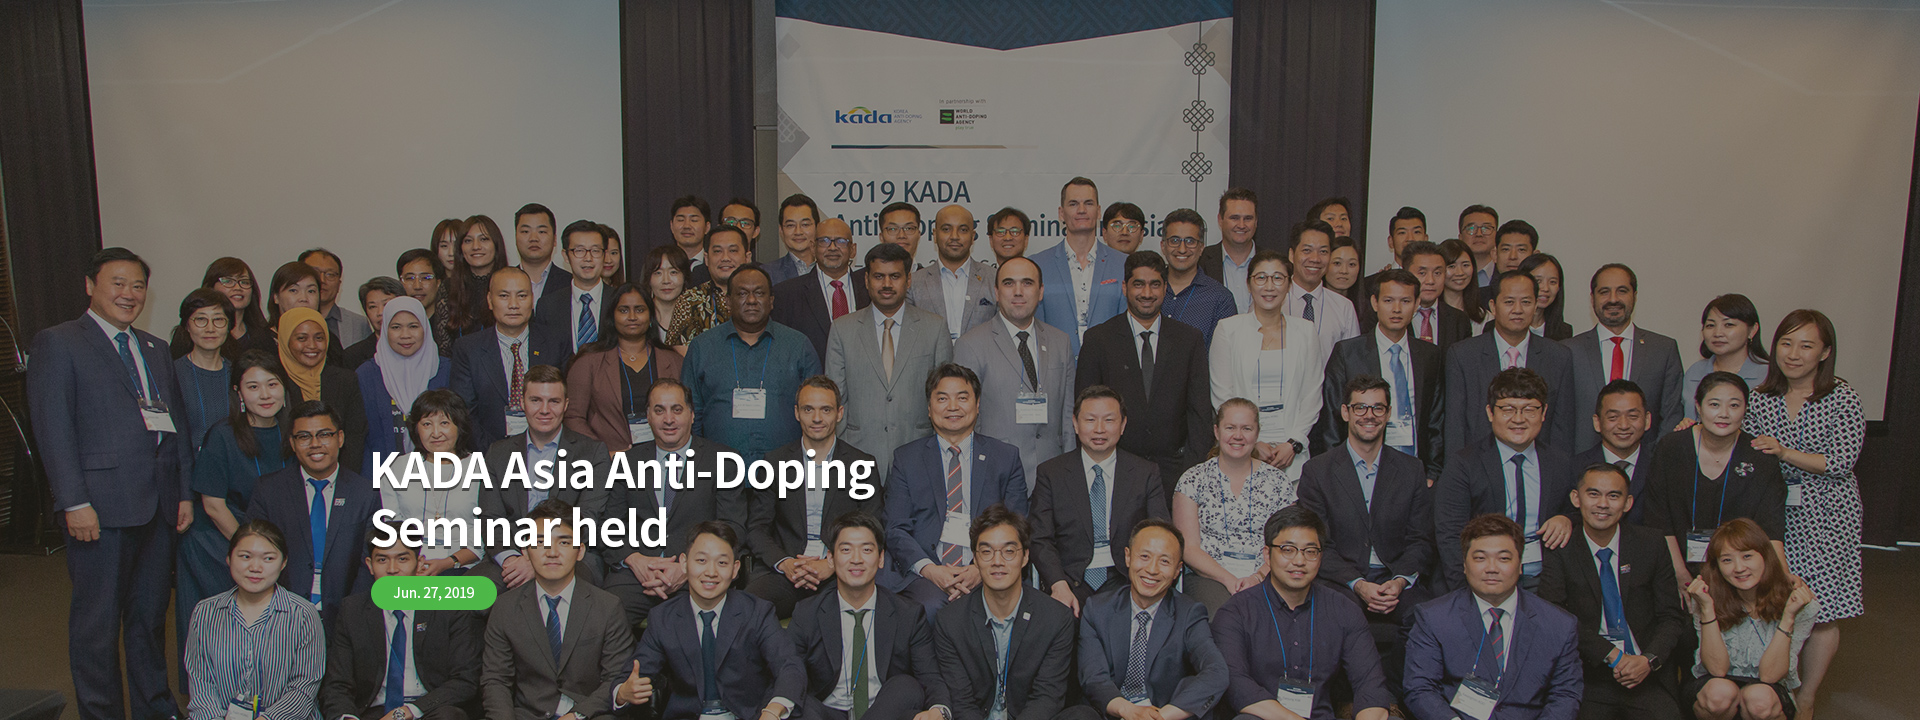 KADA Asia Anti-Doping Seminar held - June 27, 2019